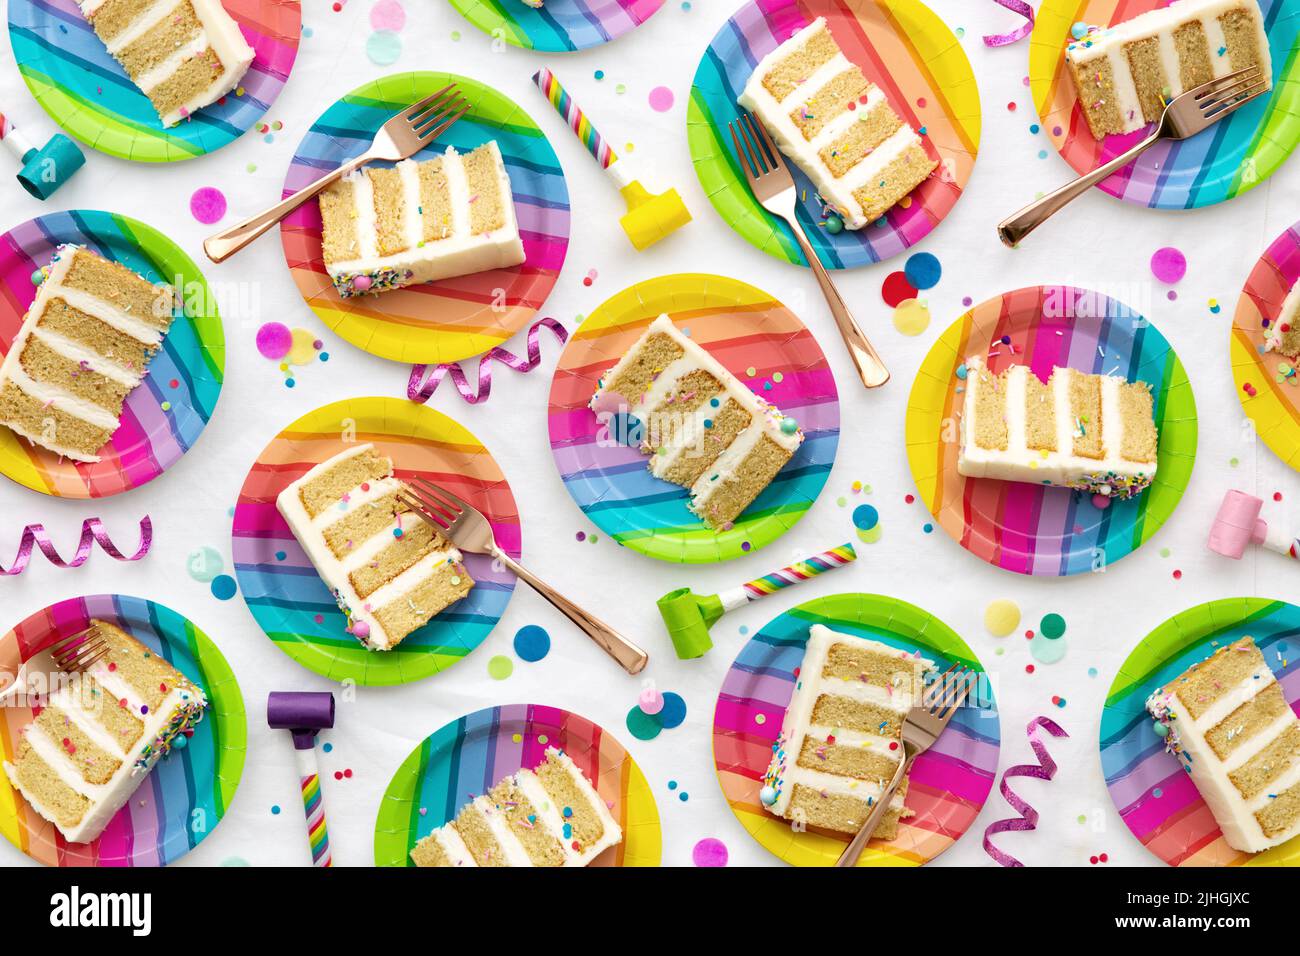 Colorido fondo de la fiesta de cumpleaños rebanadas de pastel de cumpleaños en coloridos platos arco iris en una fiesta de cumpleaños Foto de stock